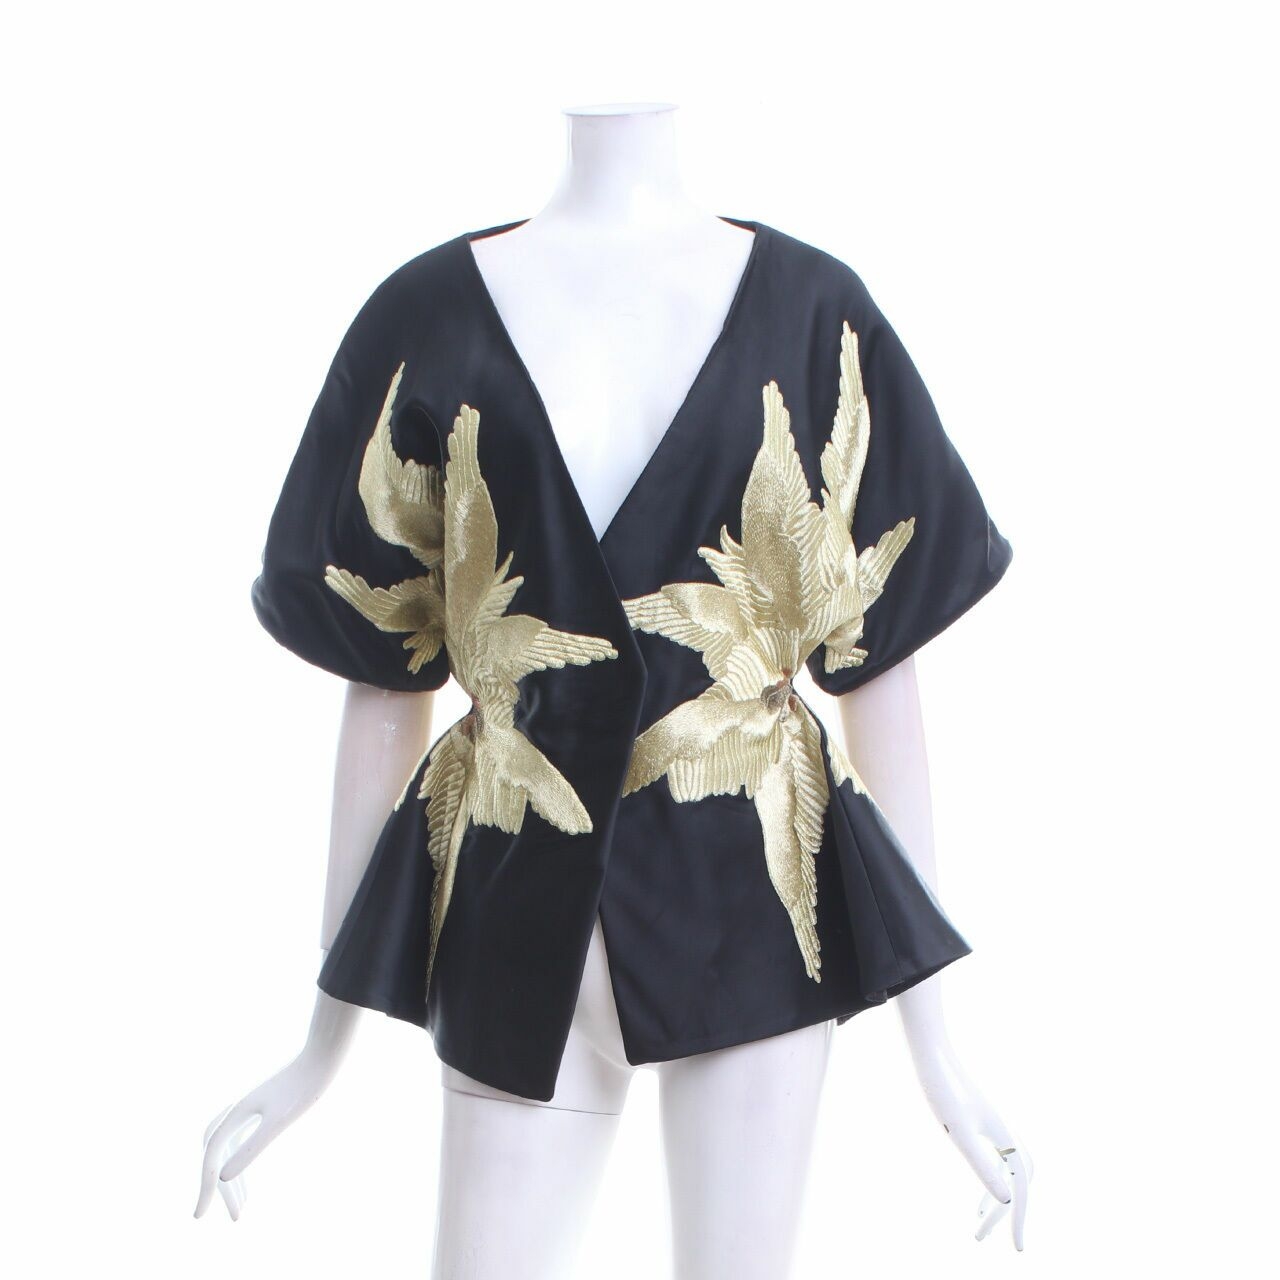 Sean & Sheila Black Gold Embroideryed Outerwear Kimono